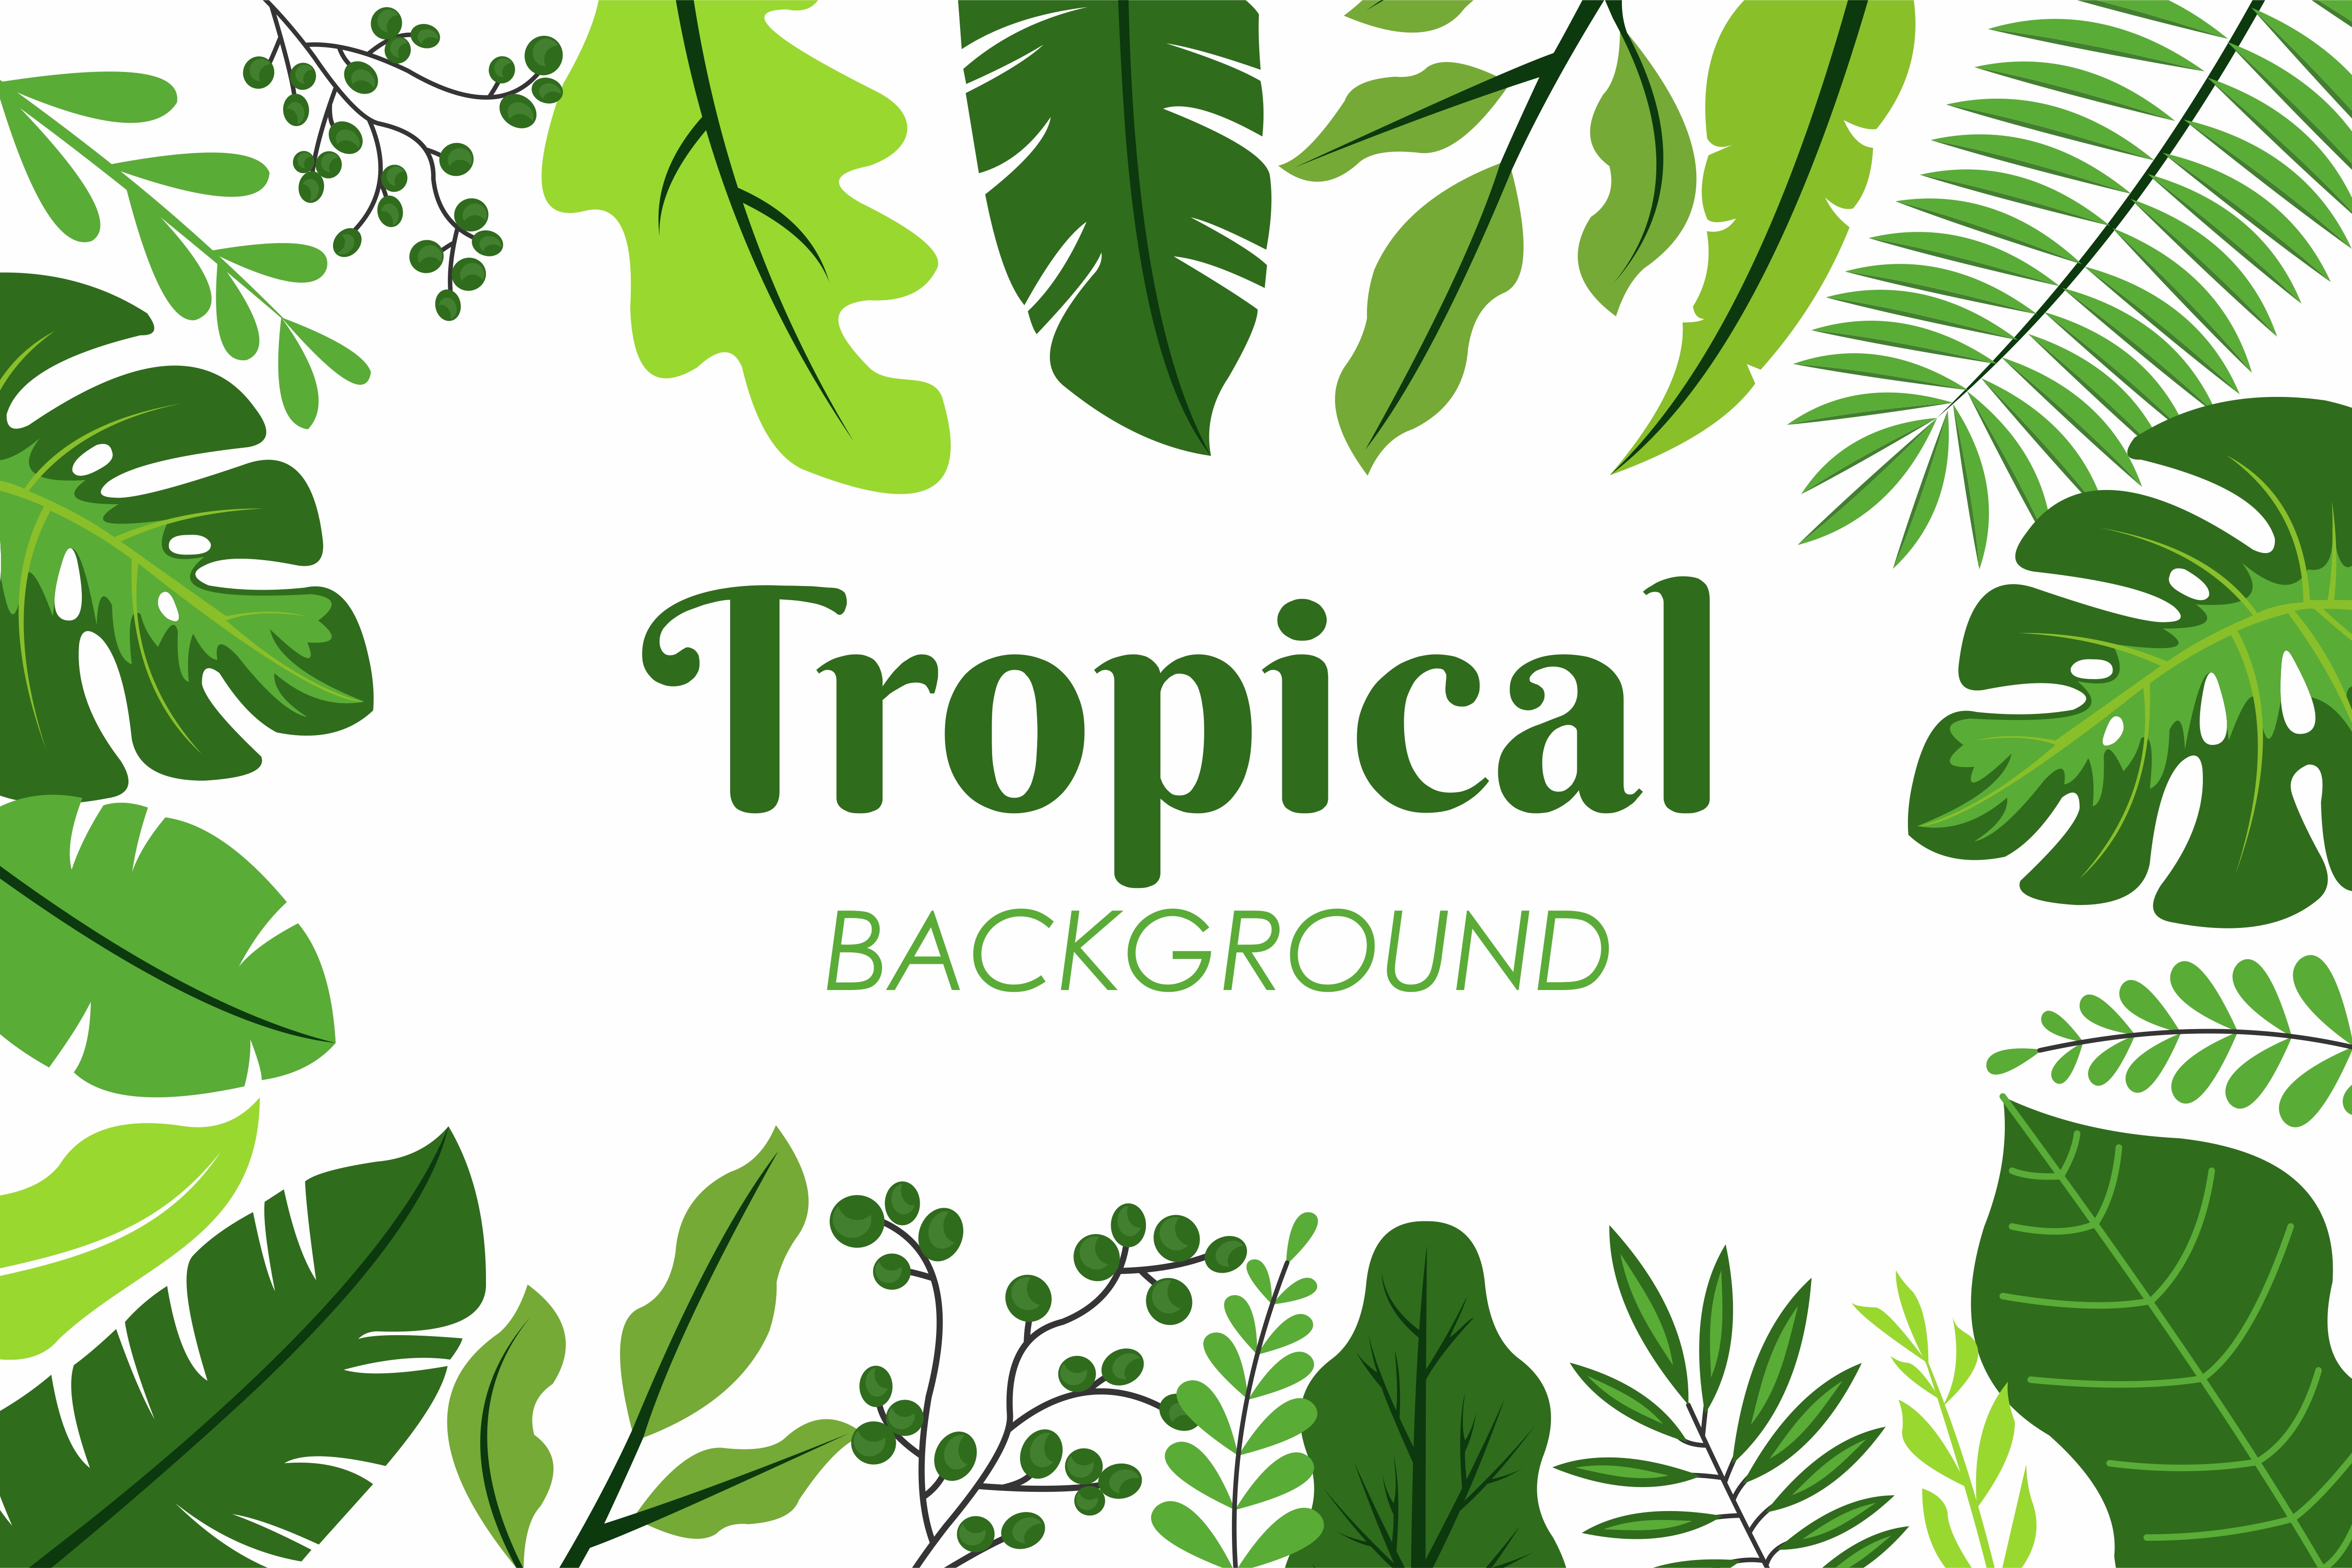 Tropical Leaves Vectores Iconos Gr Ficos Y Fondos Para Descargar Gratis